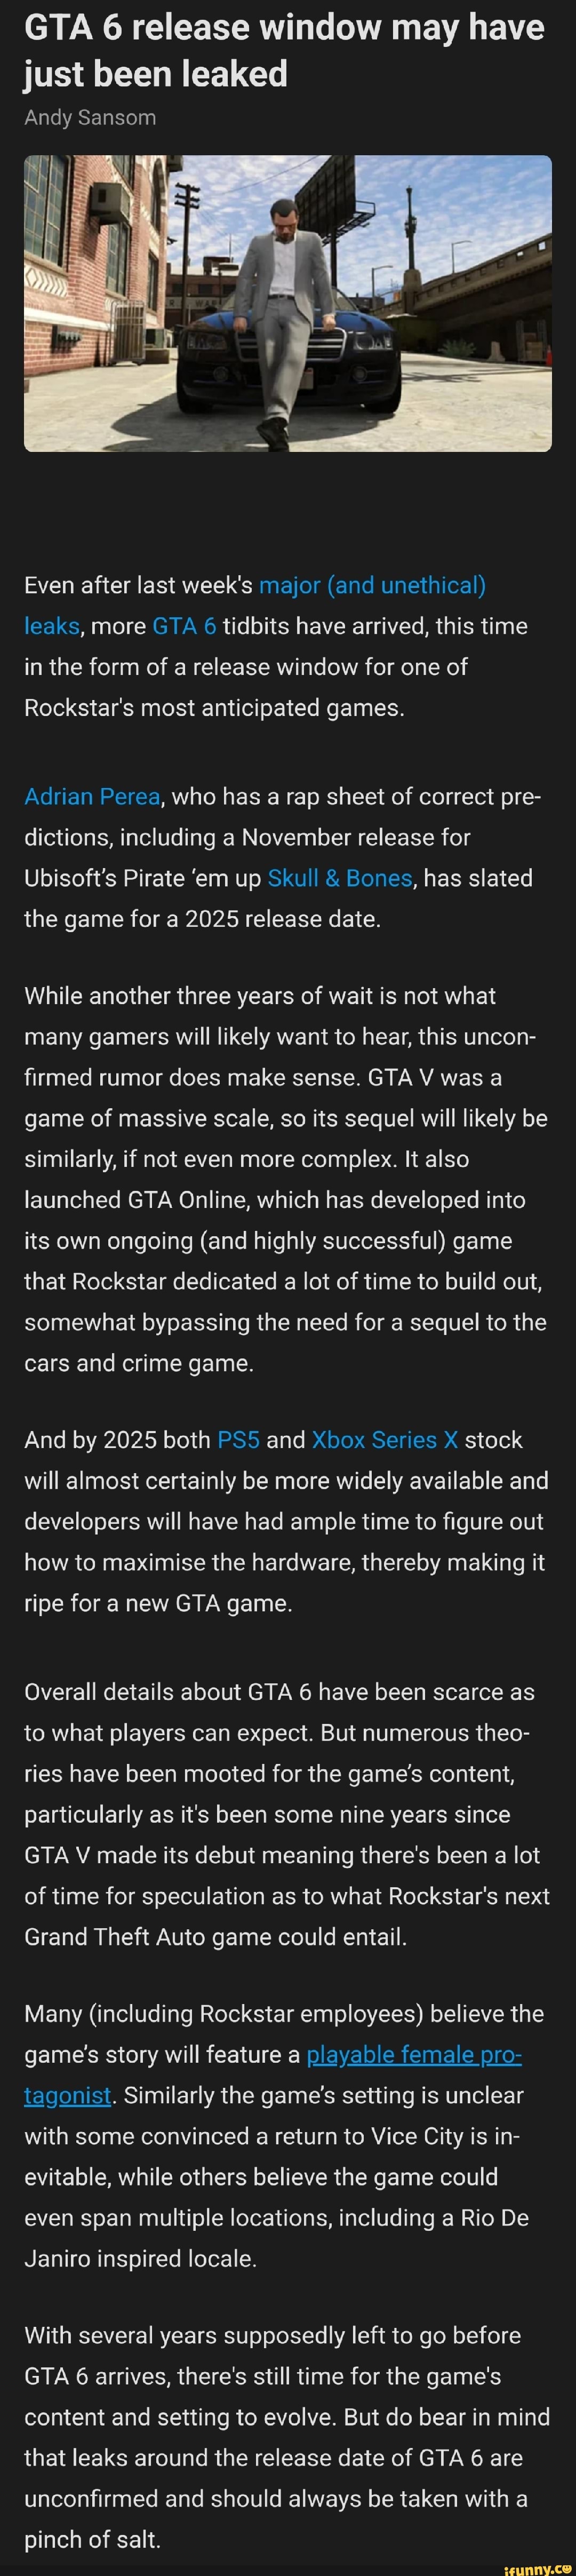 GTA 6: Release Date Leaks - GadgetMates